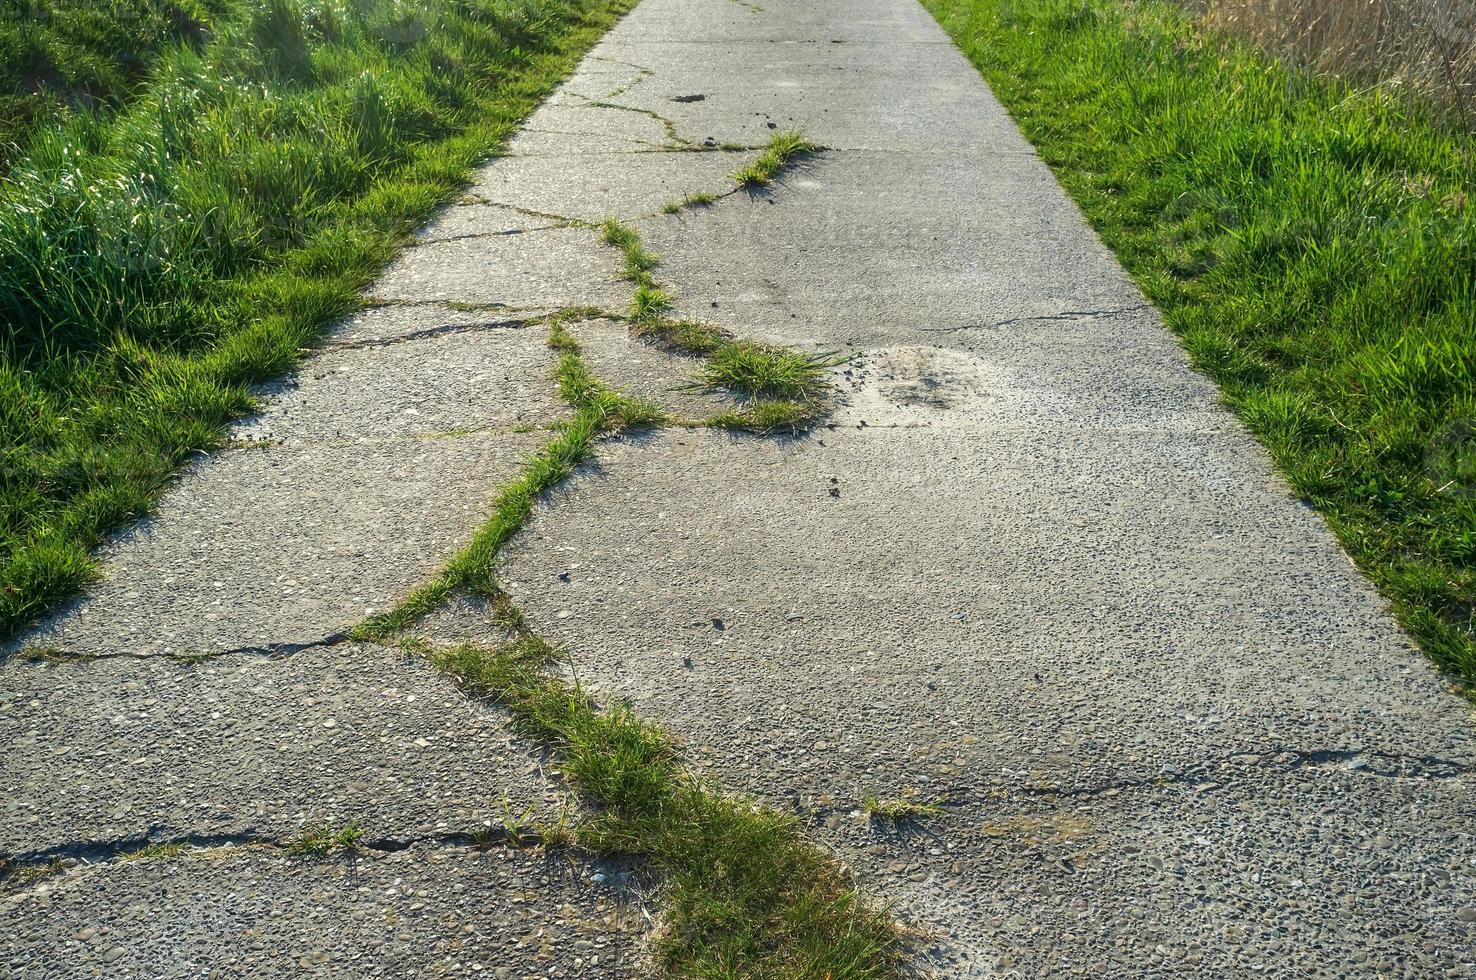 antiguo camino de hormigón con grietas y cubierto de hierba, utilizado para andar en bicicleta o caminar. foto